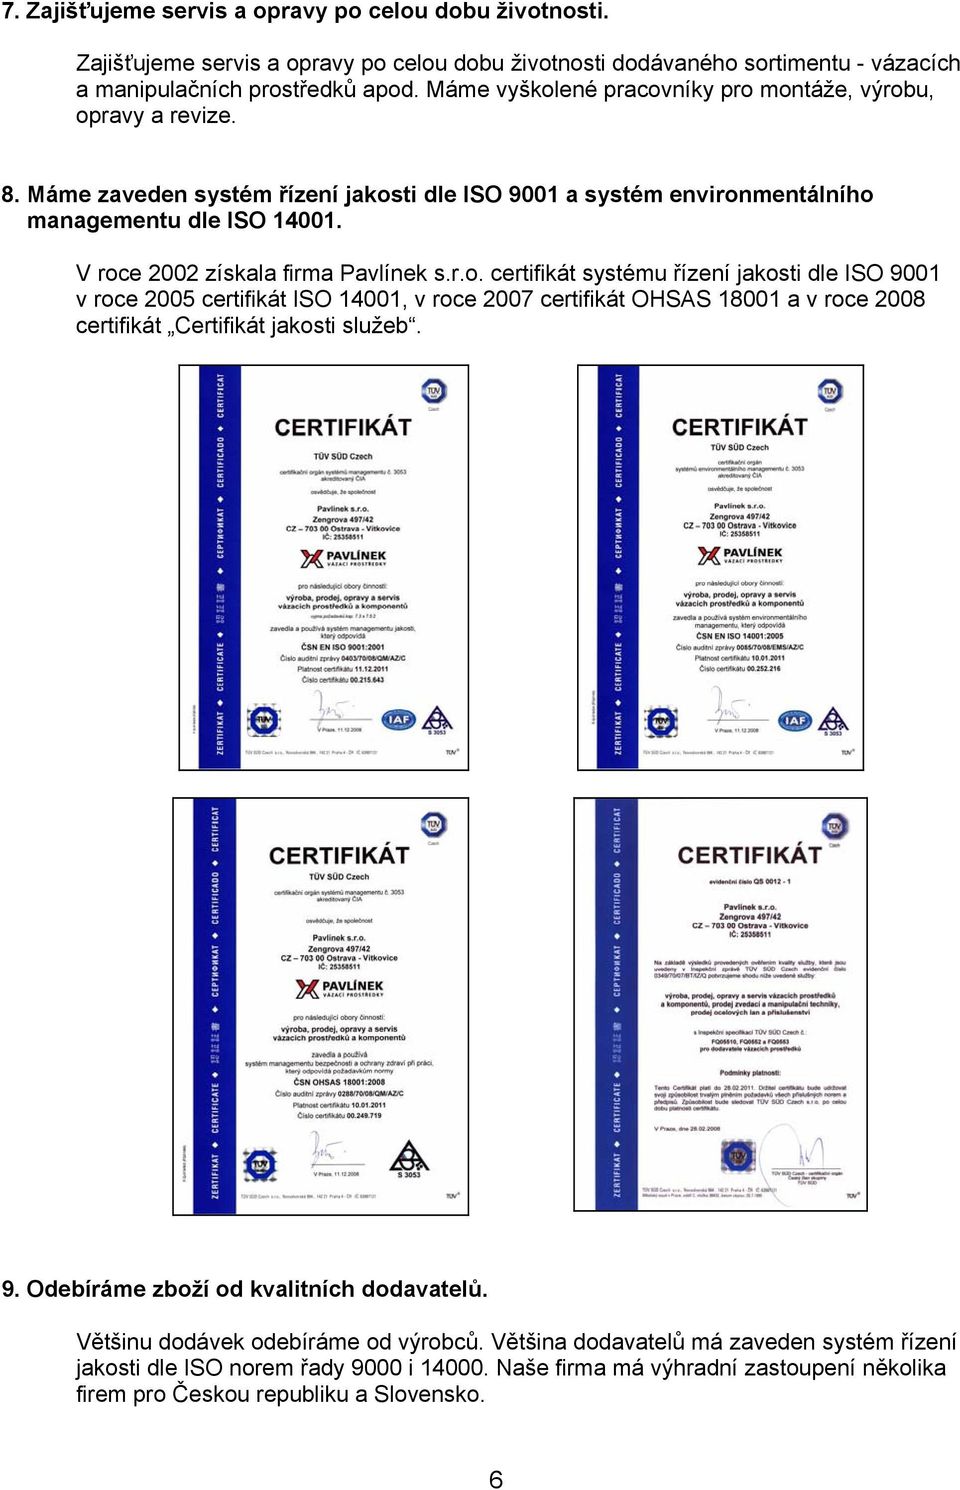 V roce 2002 získala firma Pavlínek s.r.o. certifikát systému řízení jakosti dle ISO 9001 v roce 2005 certifikát ISO 14001, v roce 2007 certifikát OHSAS 18001 a v roce 2008 certifikát Certifikát jakosti služeb.